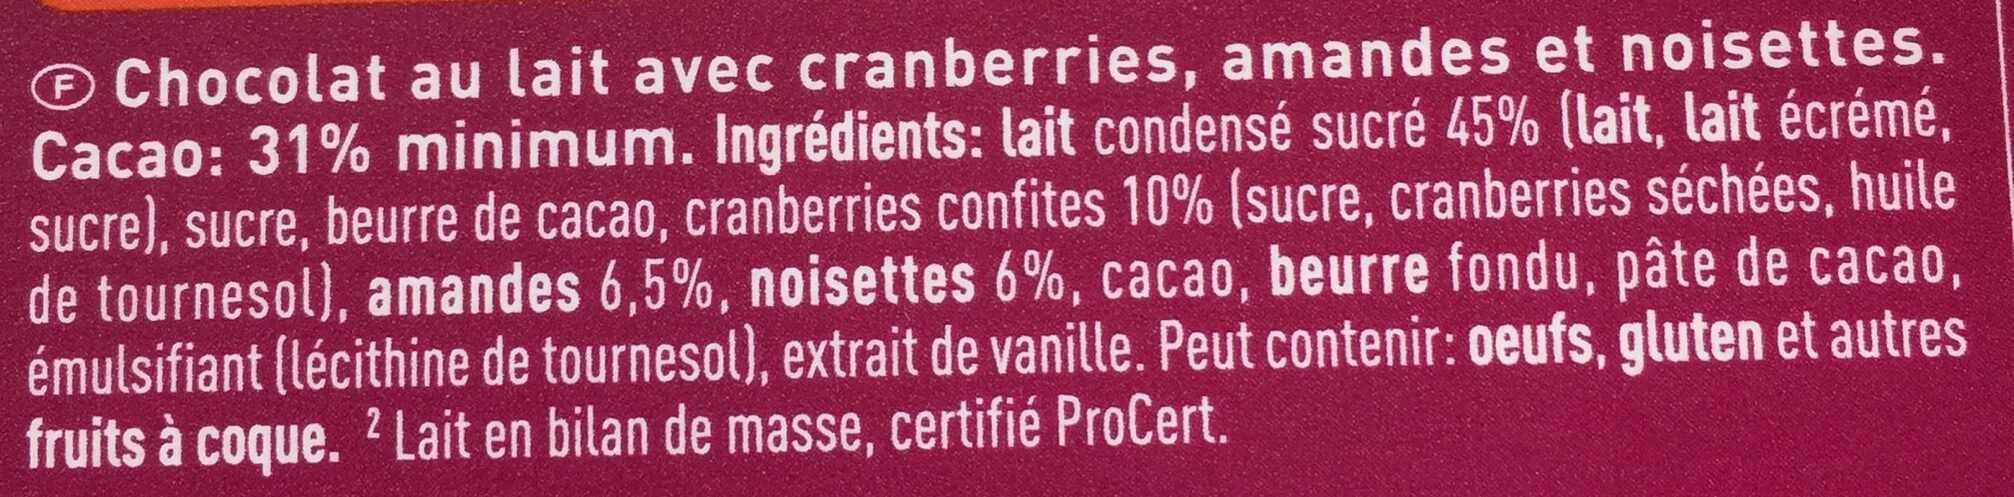 Lait cranberries amandes noisettes - Ingrédients